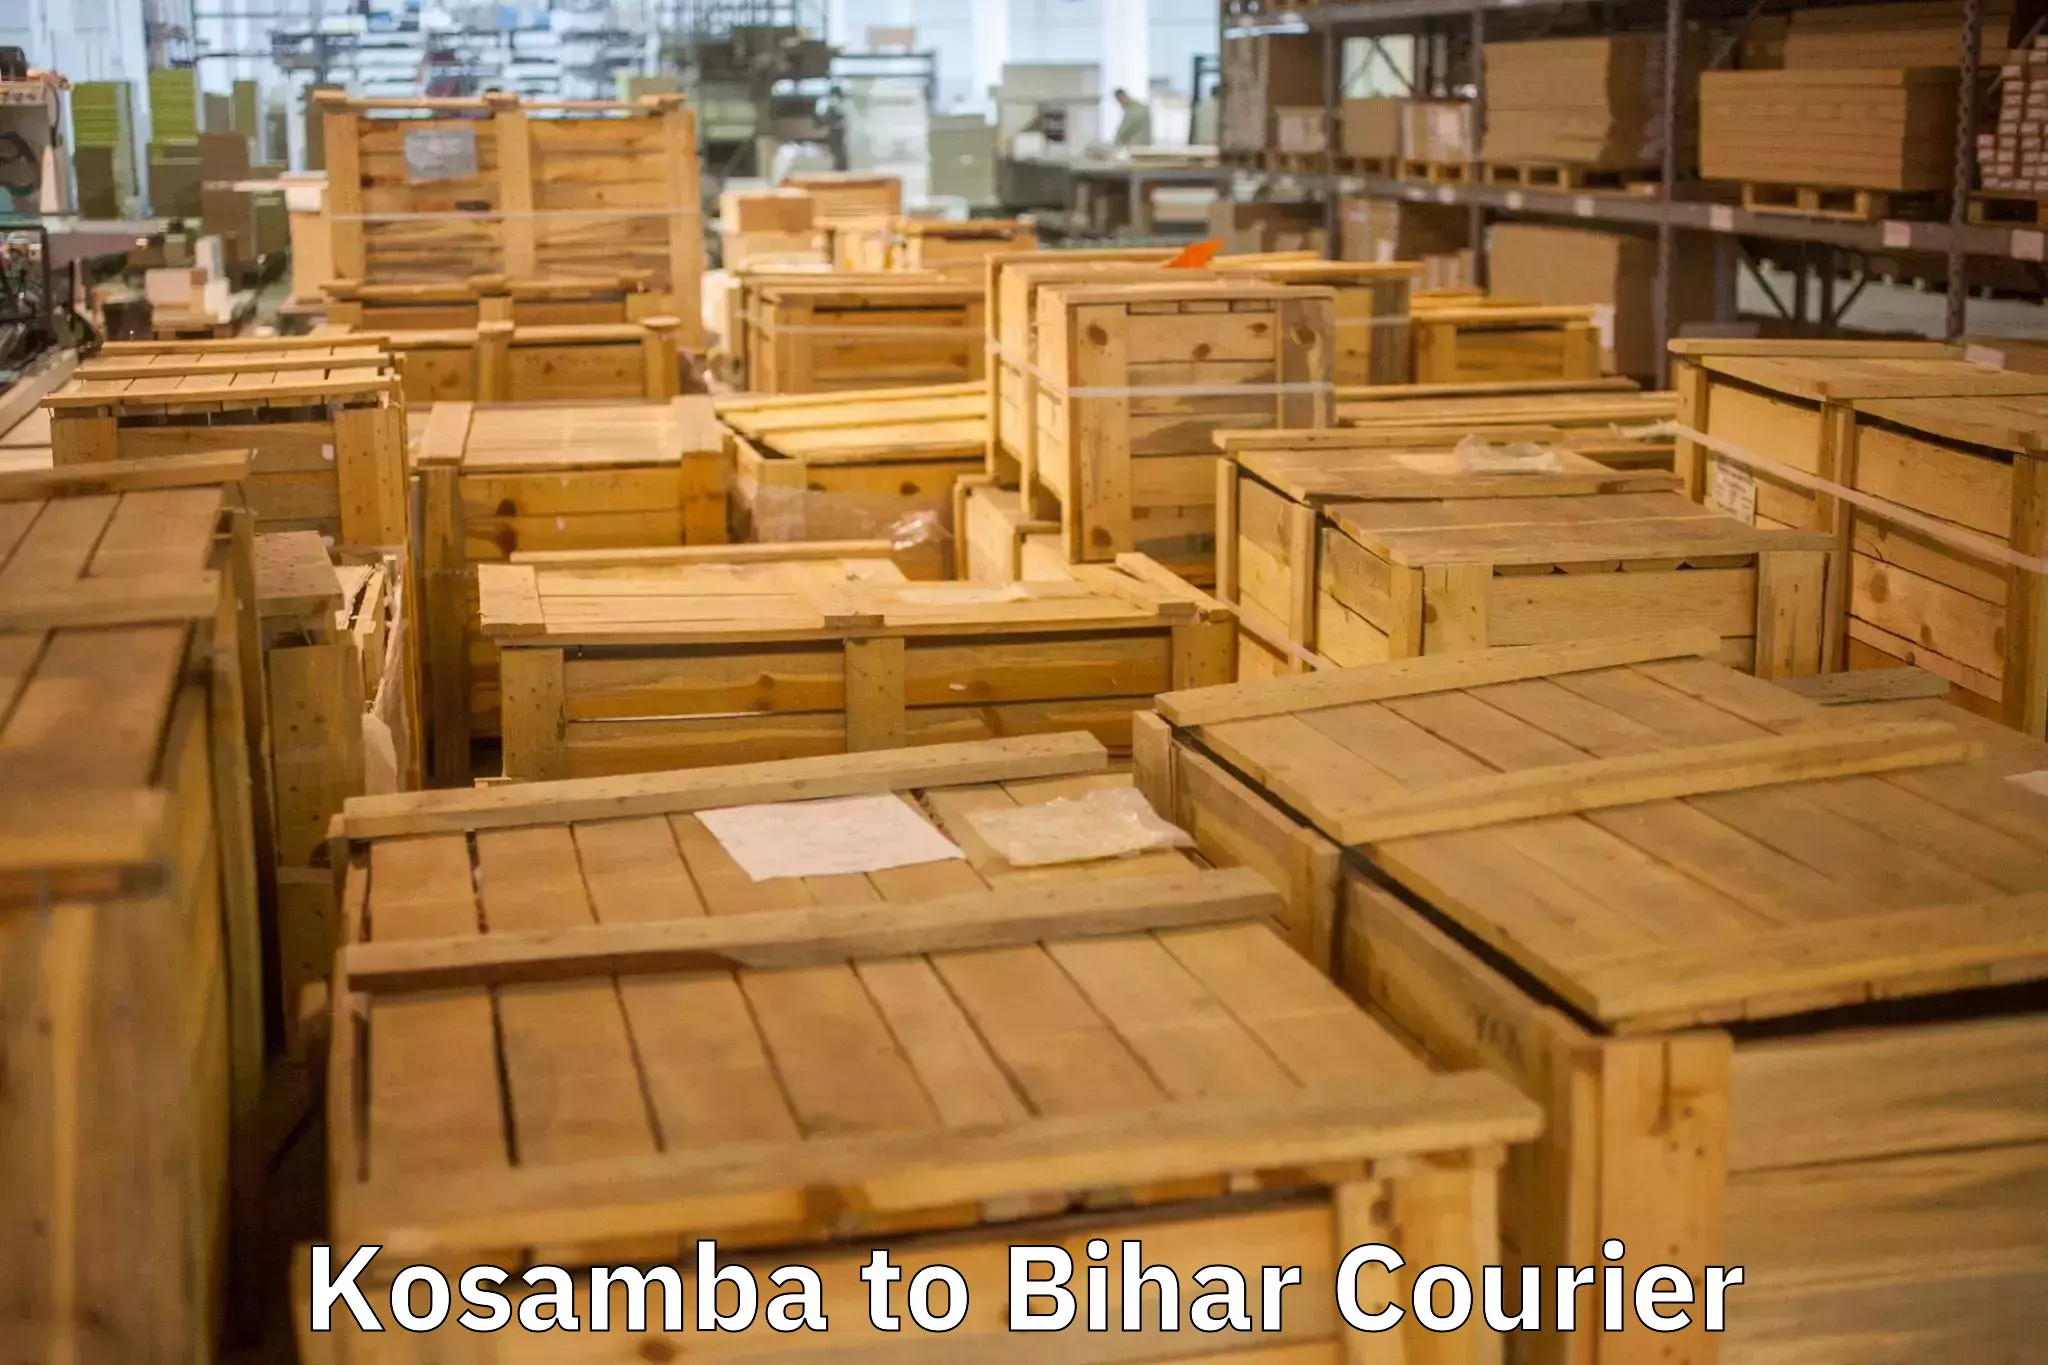 Moving and storage services Kosamba to Pavapuri